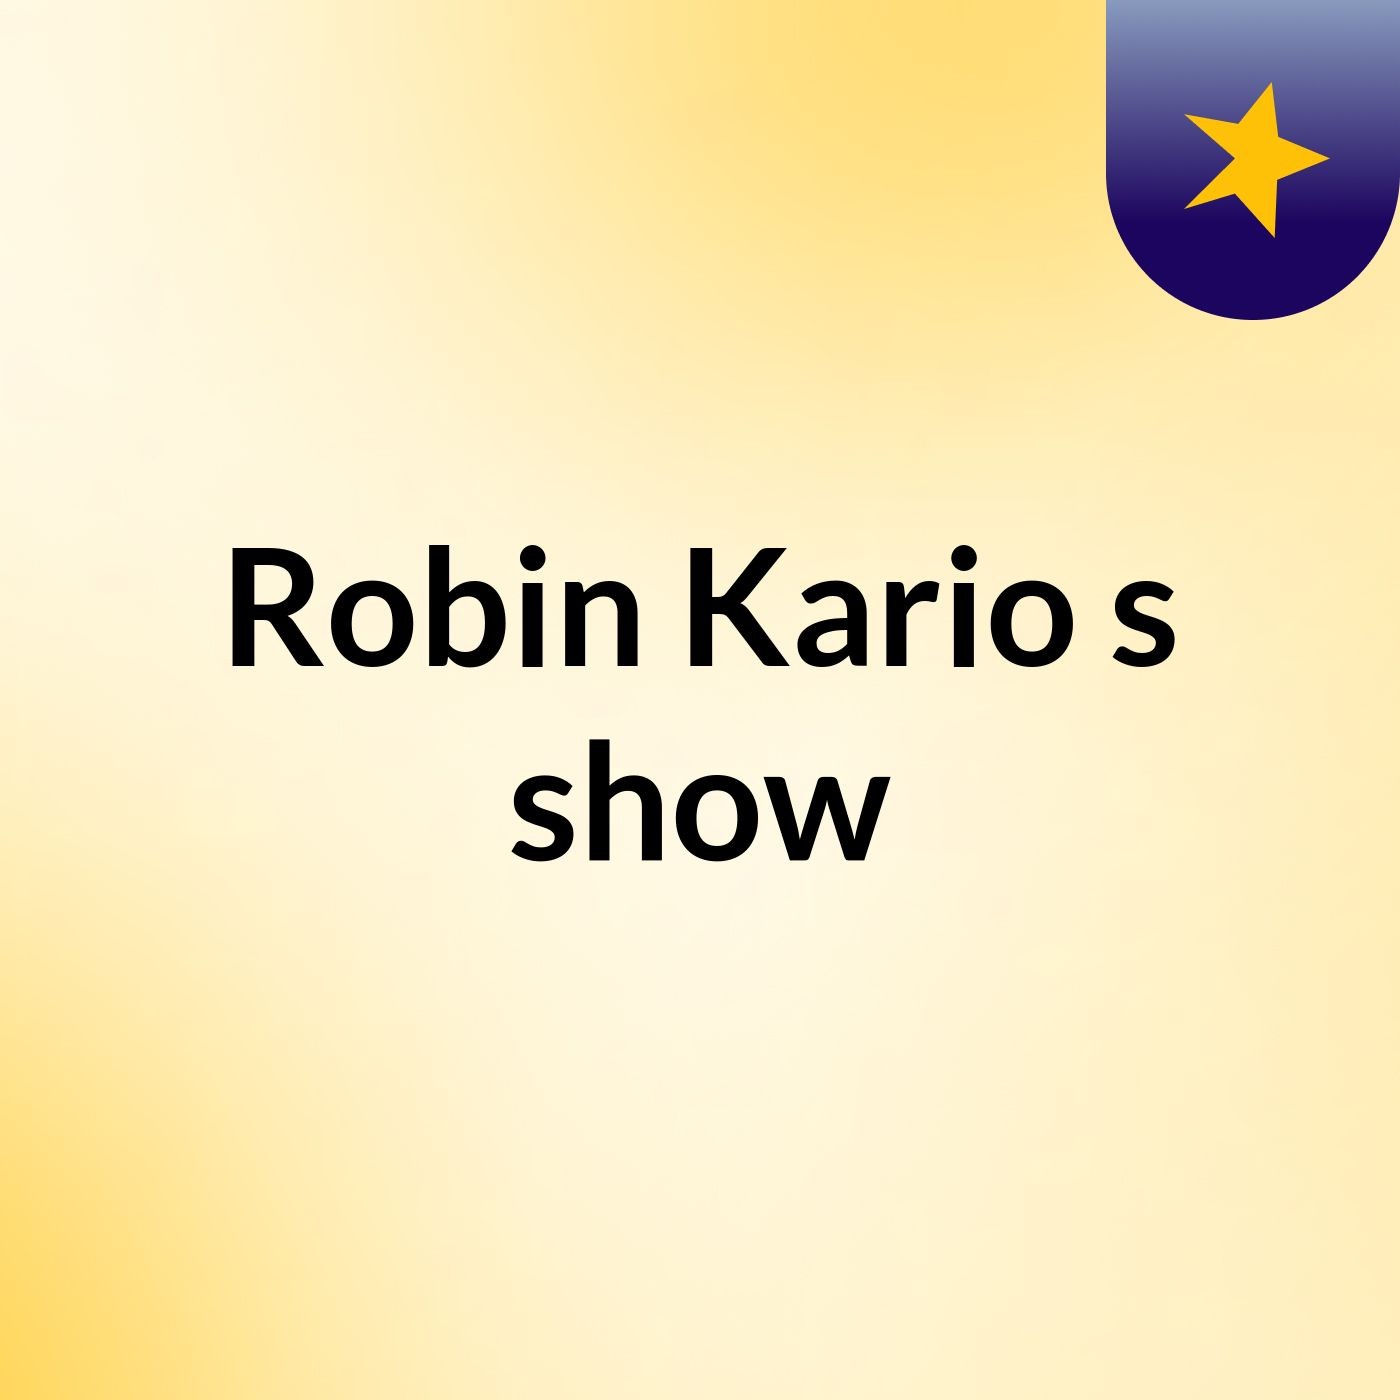 Episode 7 - Robin Kario's show